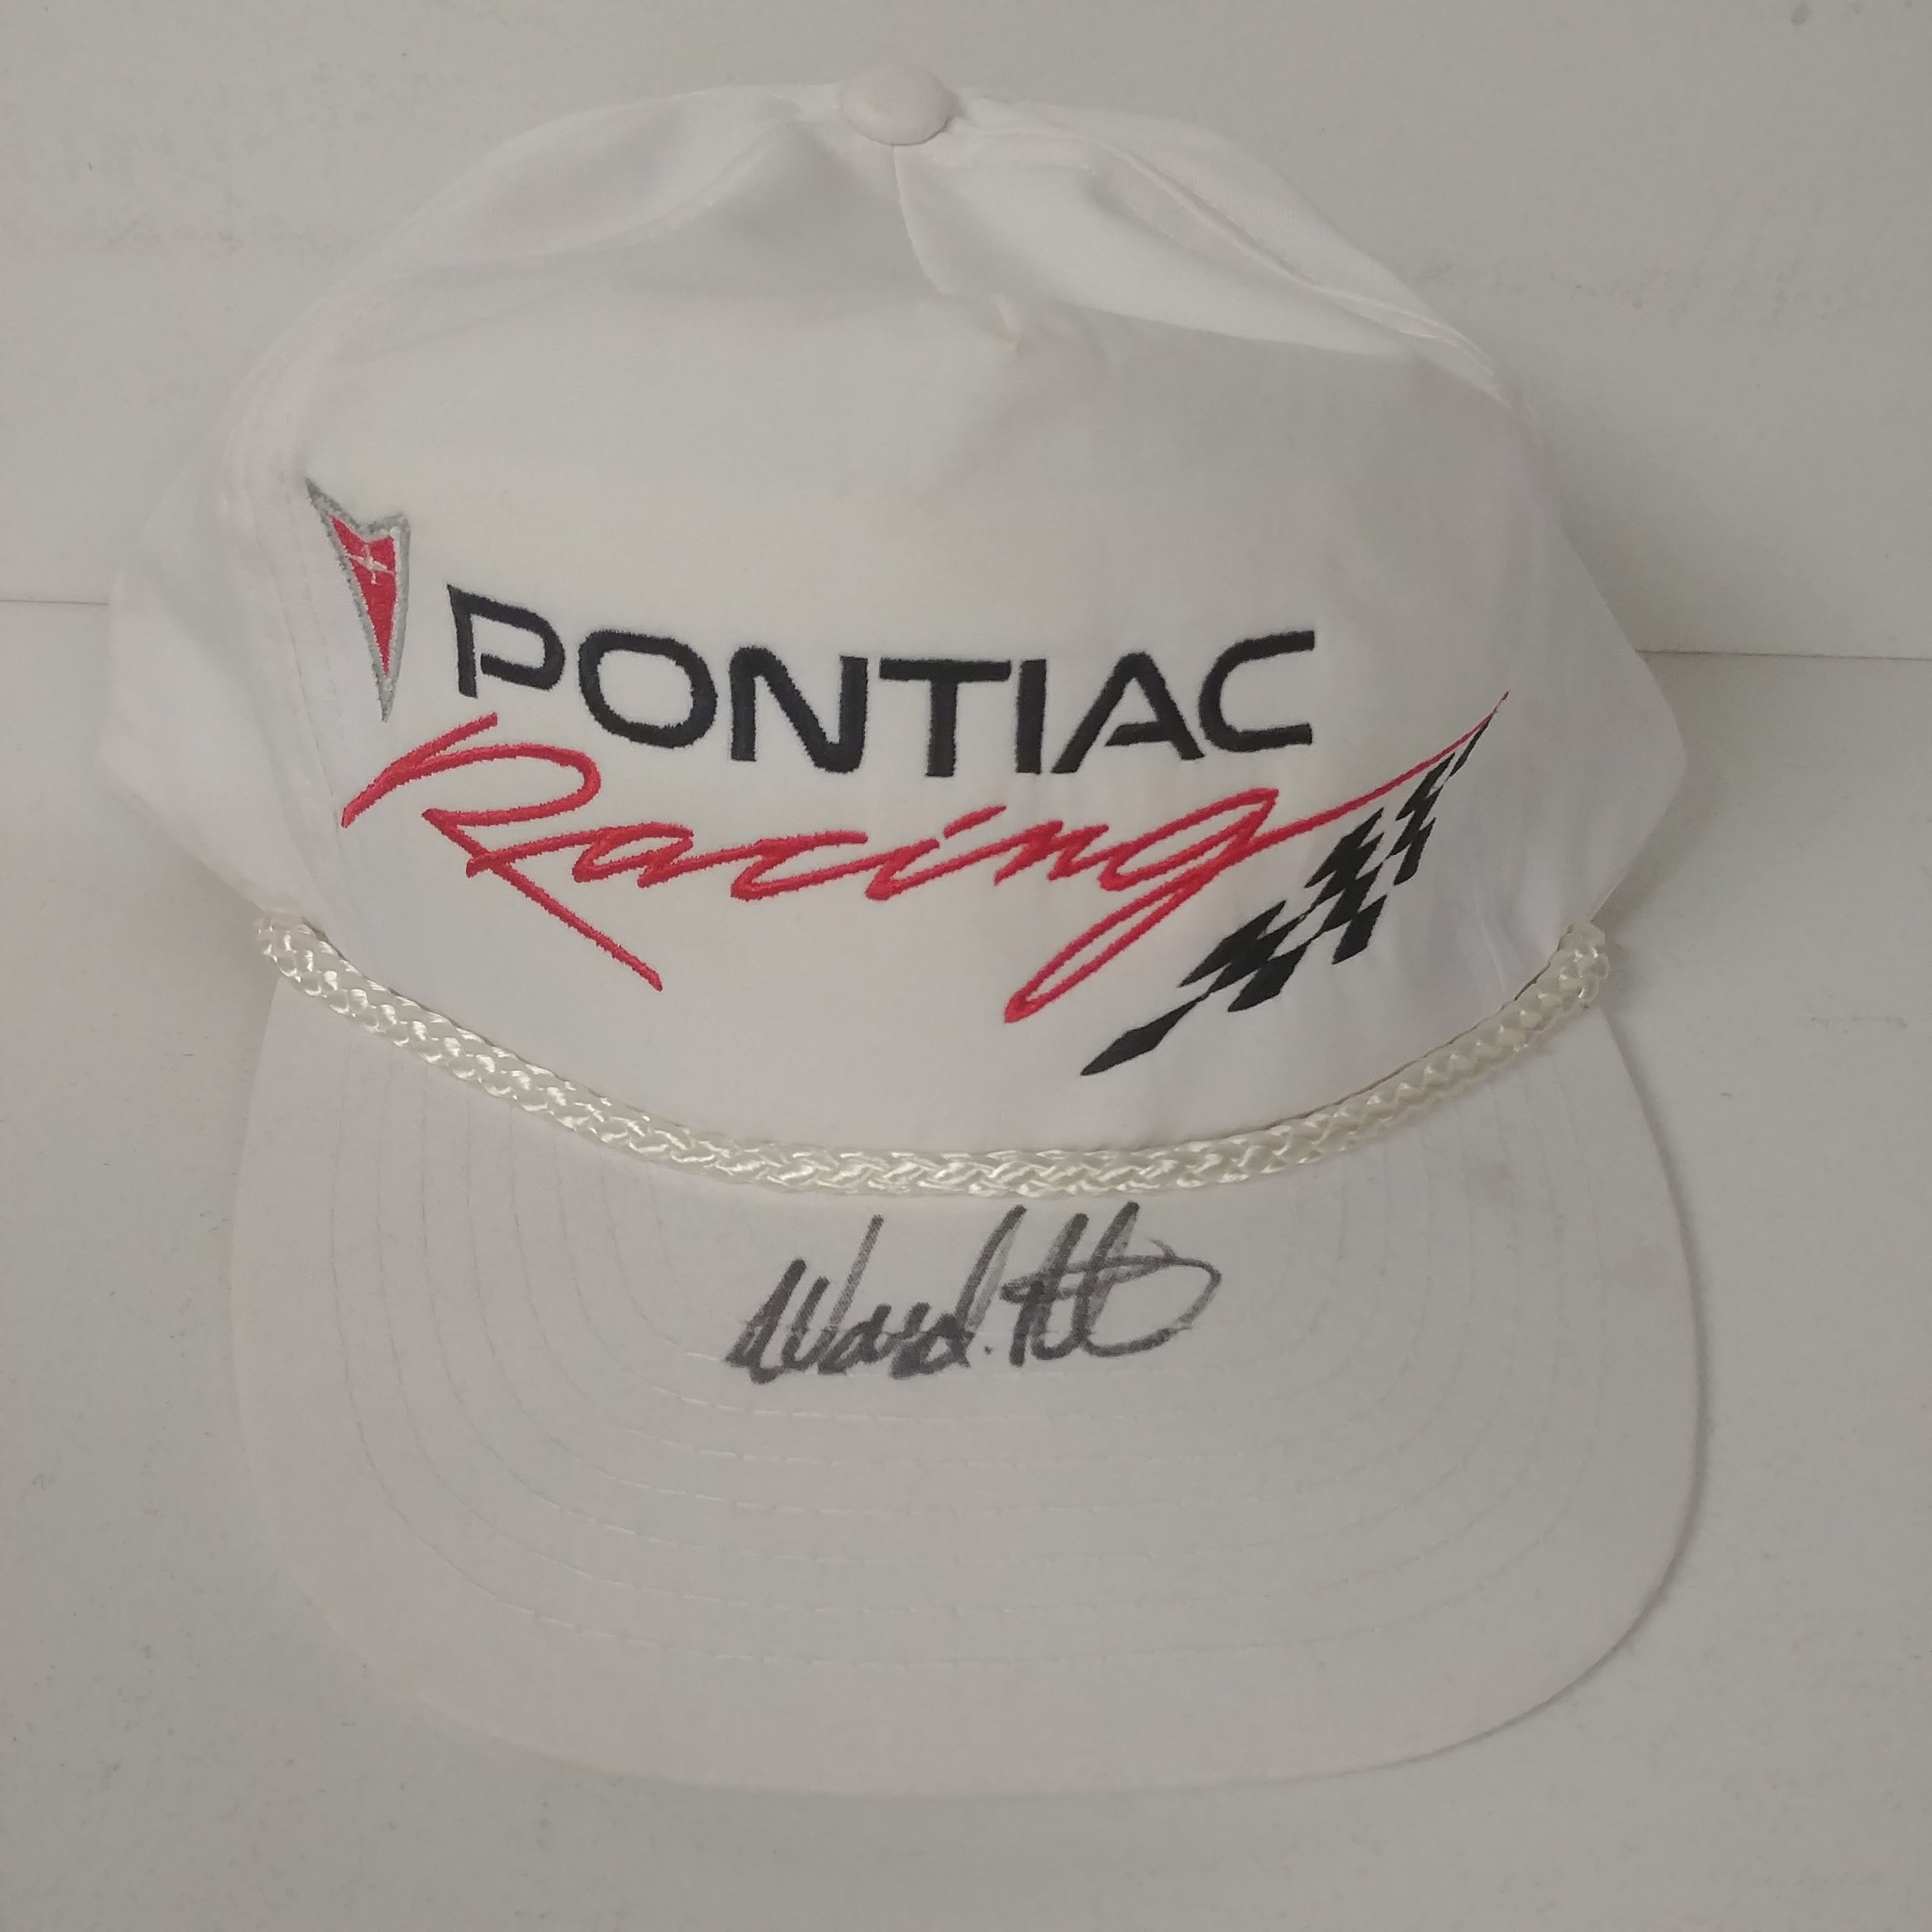 1998 Ward Burton Pontiac Racing "Autographed" cap